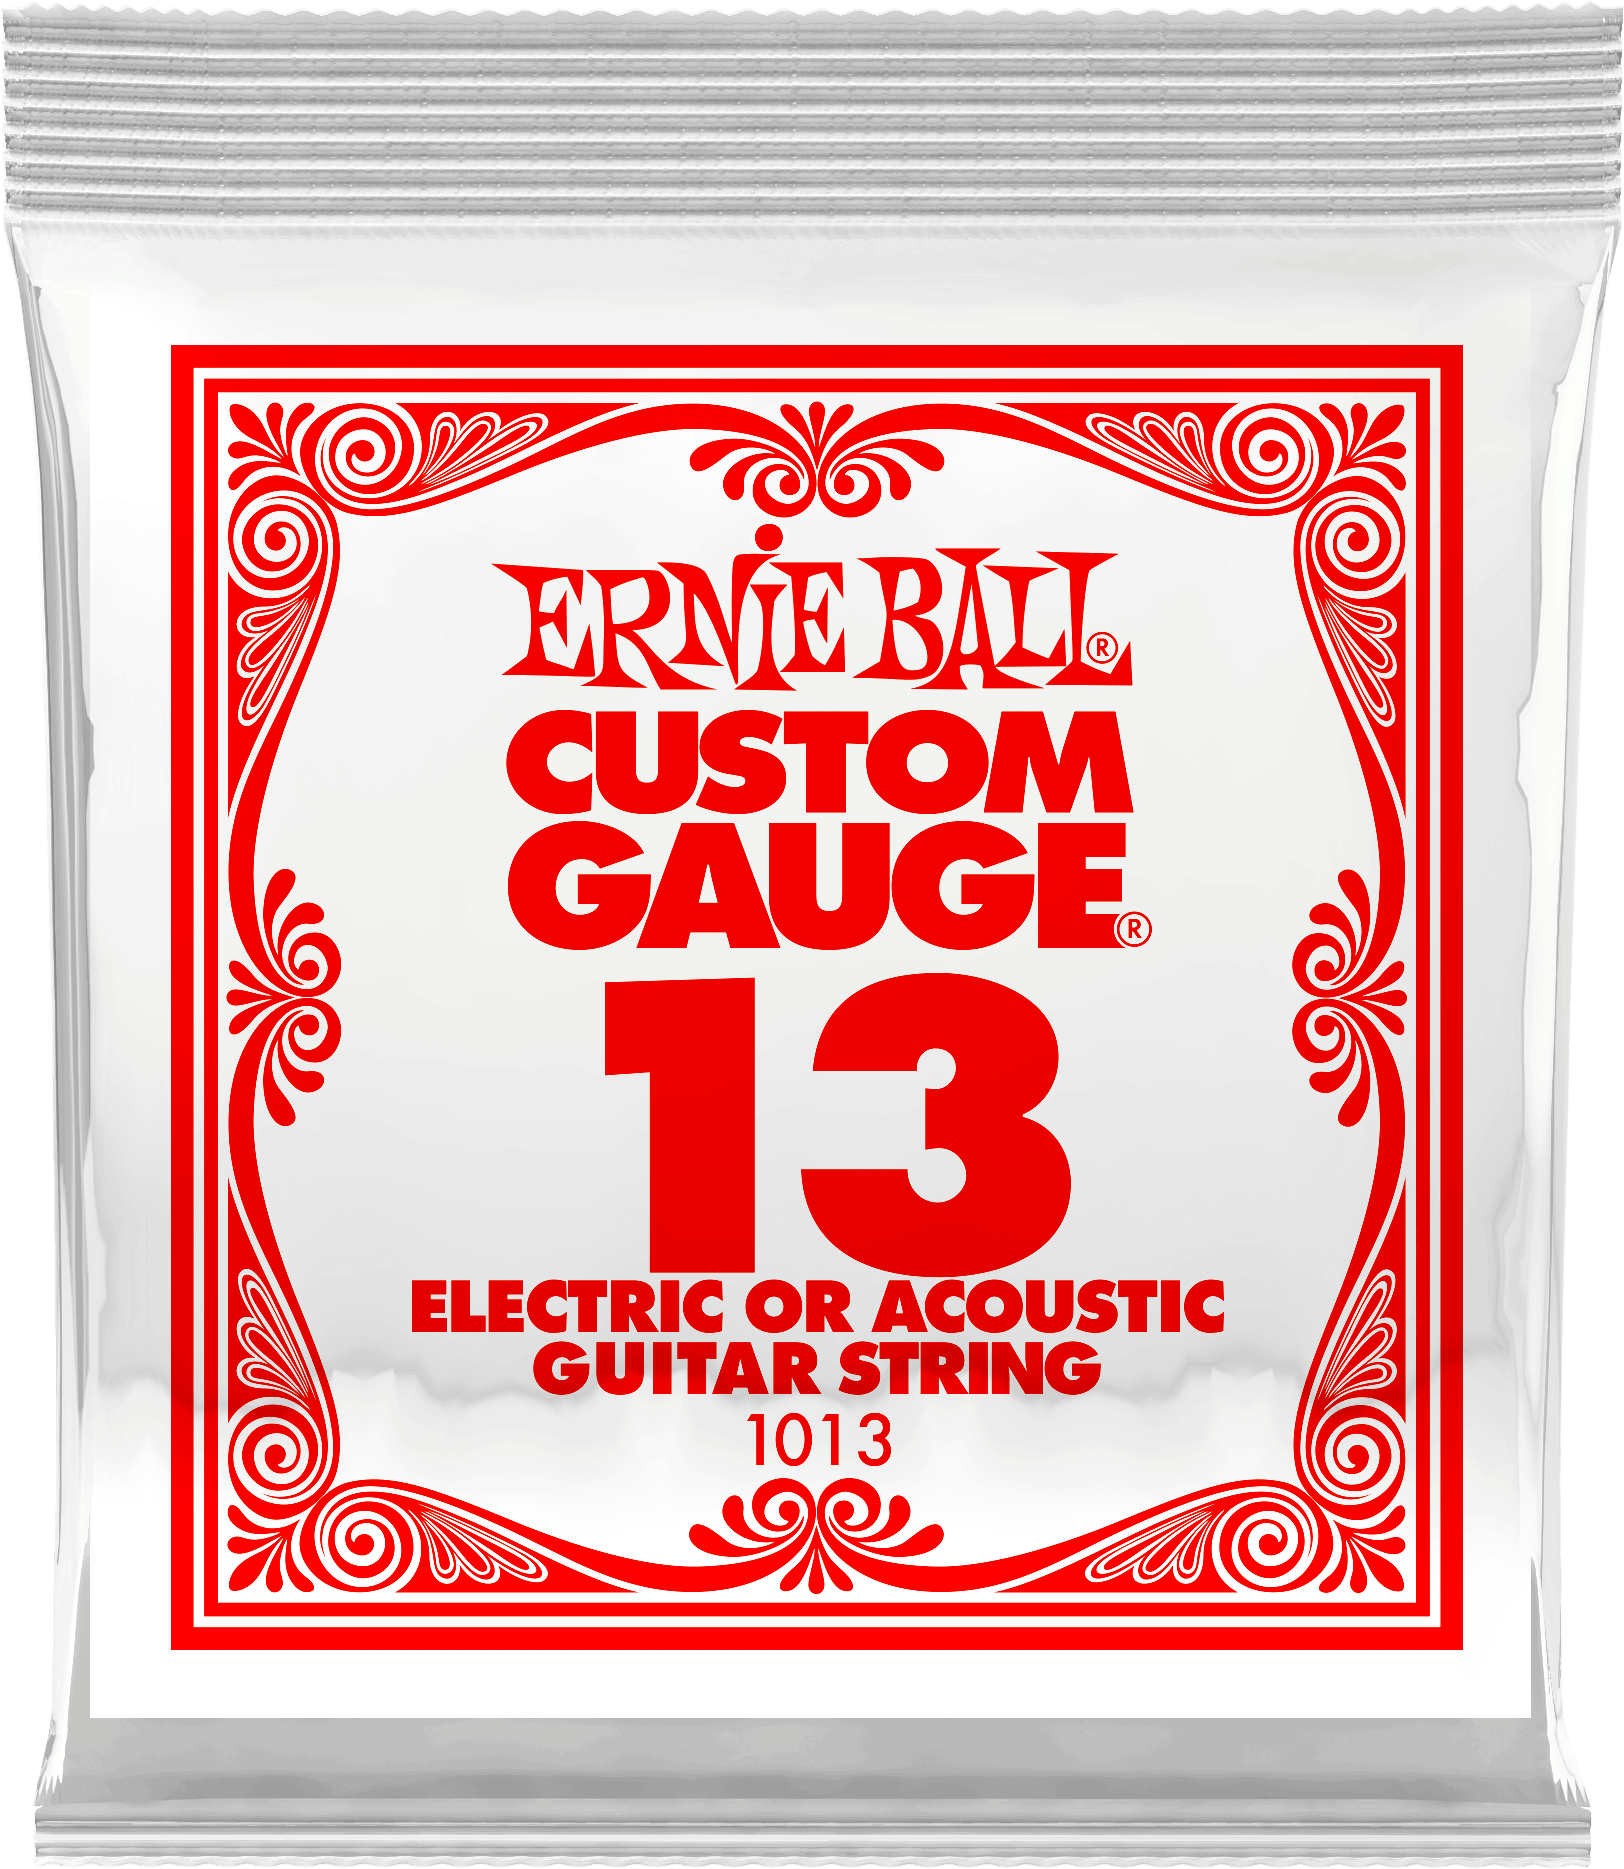 Струна для акустической и электрогитары Ernie Ball P01013 Custom gauge, сталь, калибр 13, Ernie Ball (Эрни Бол)